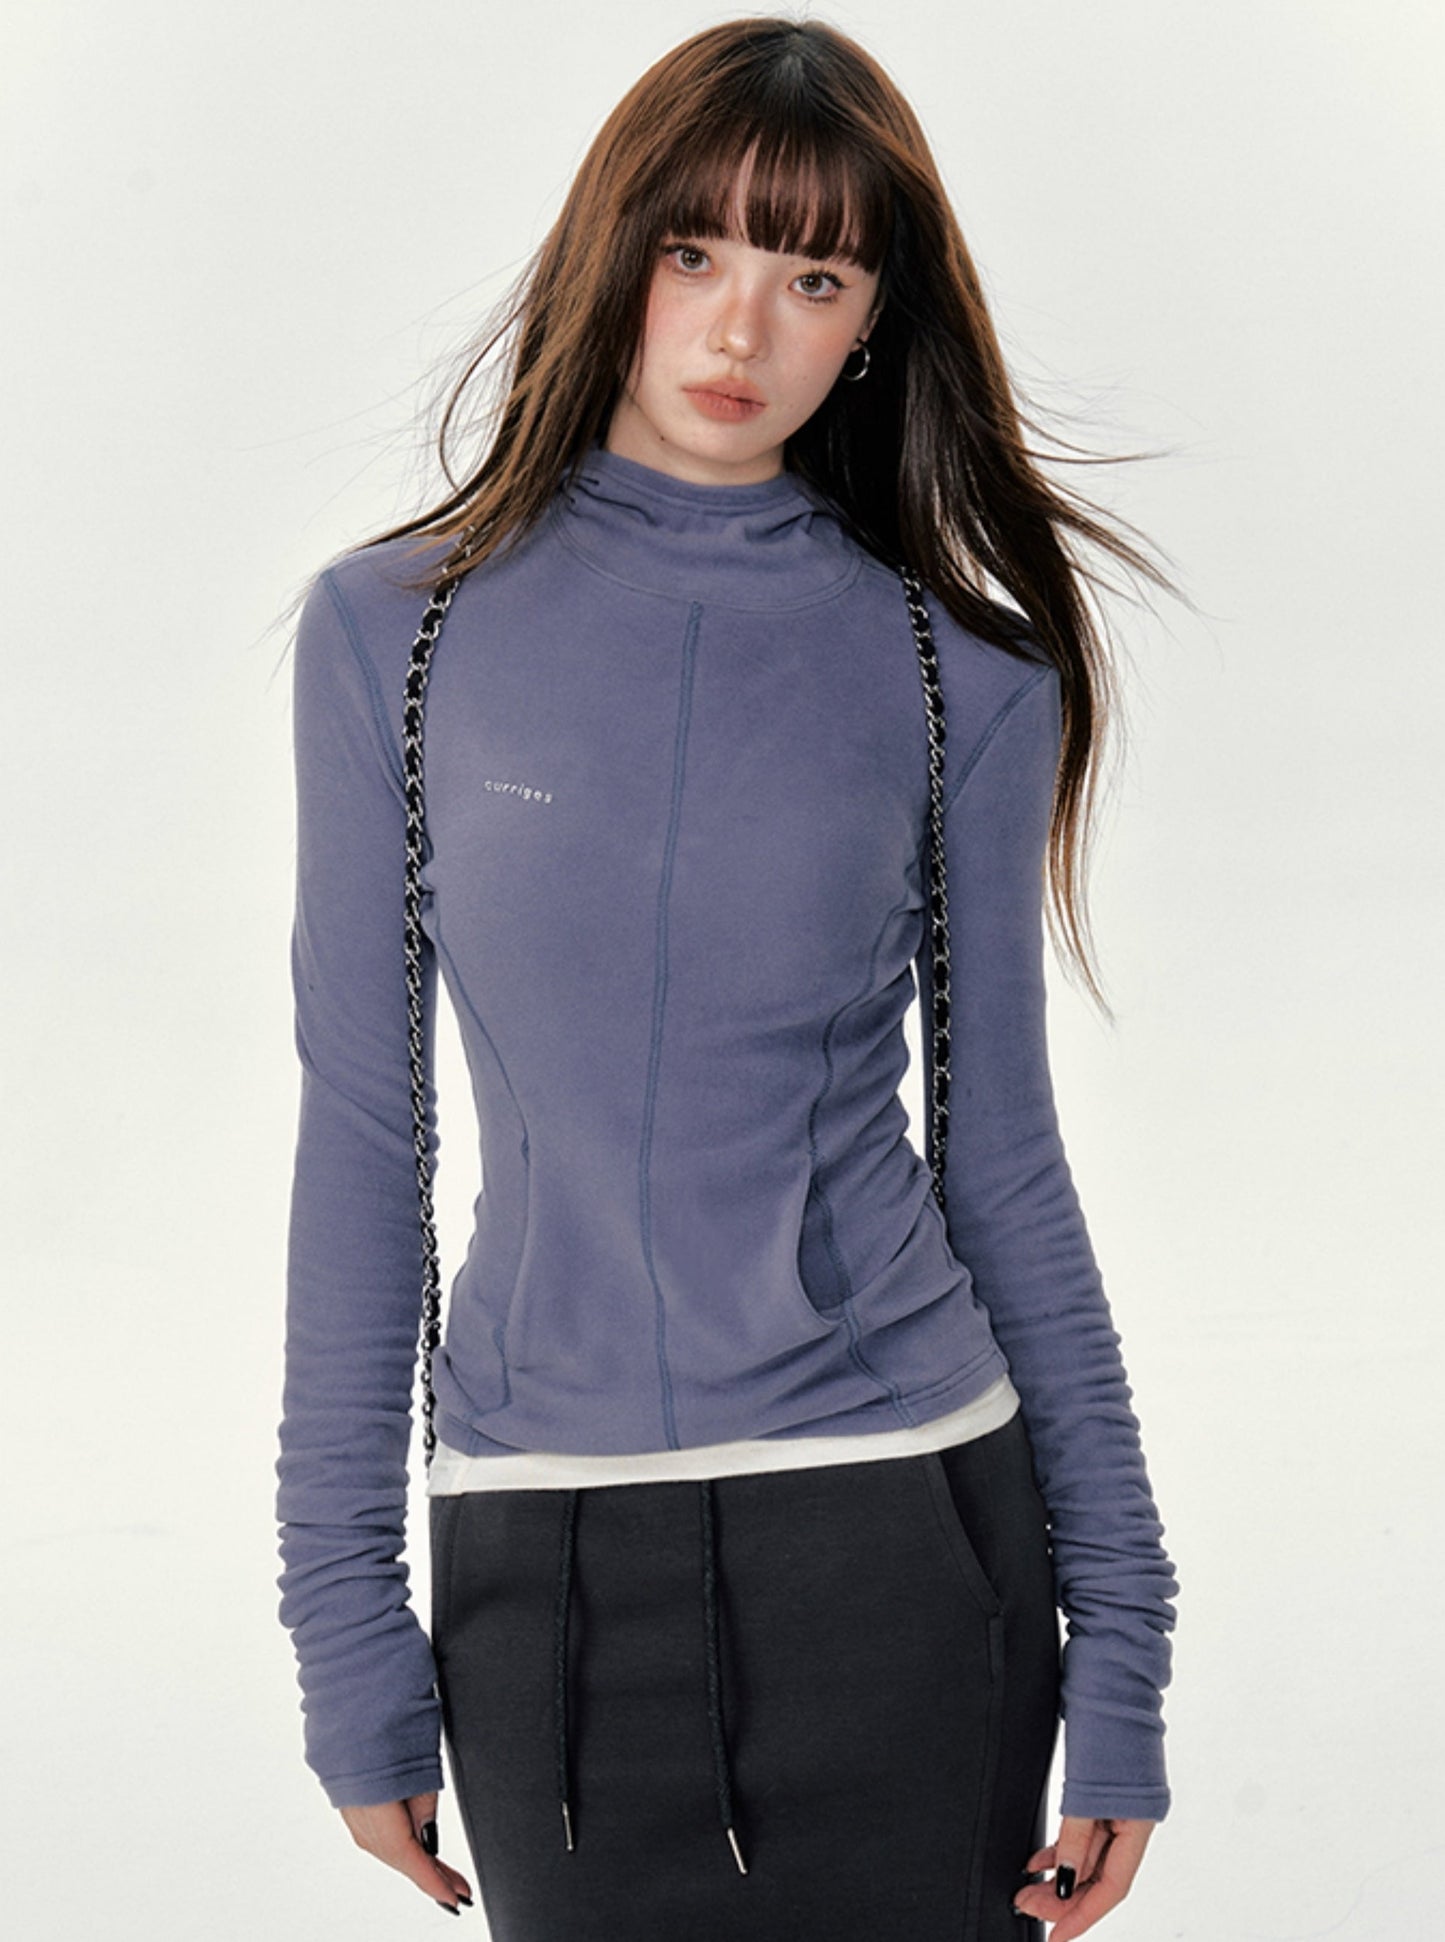 American slim fit hooded half-turtleneck sweatshirt top